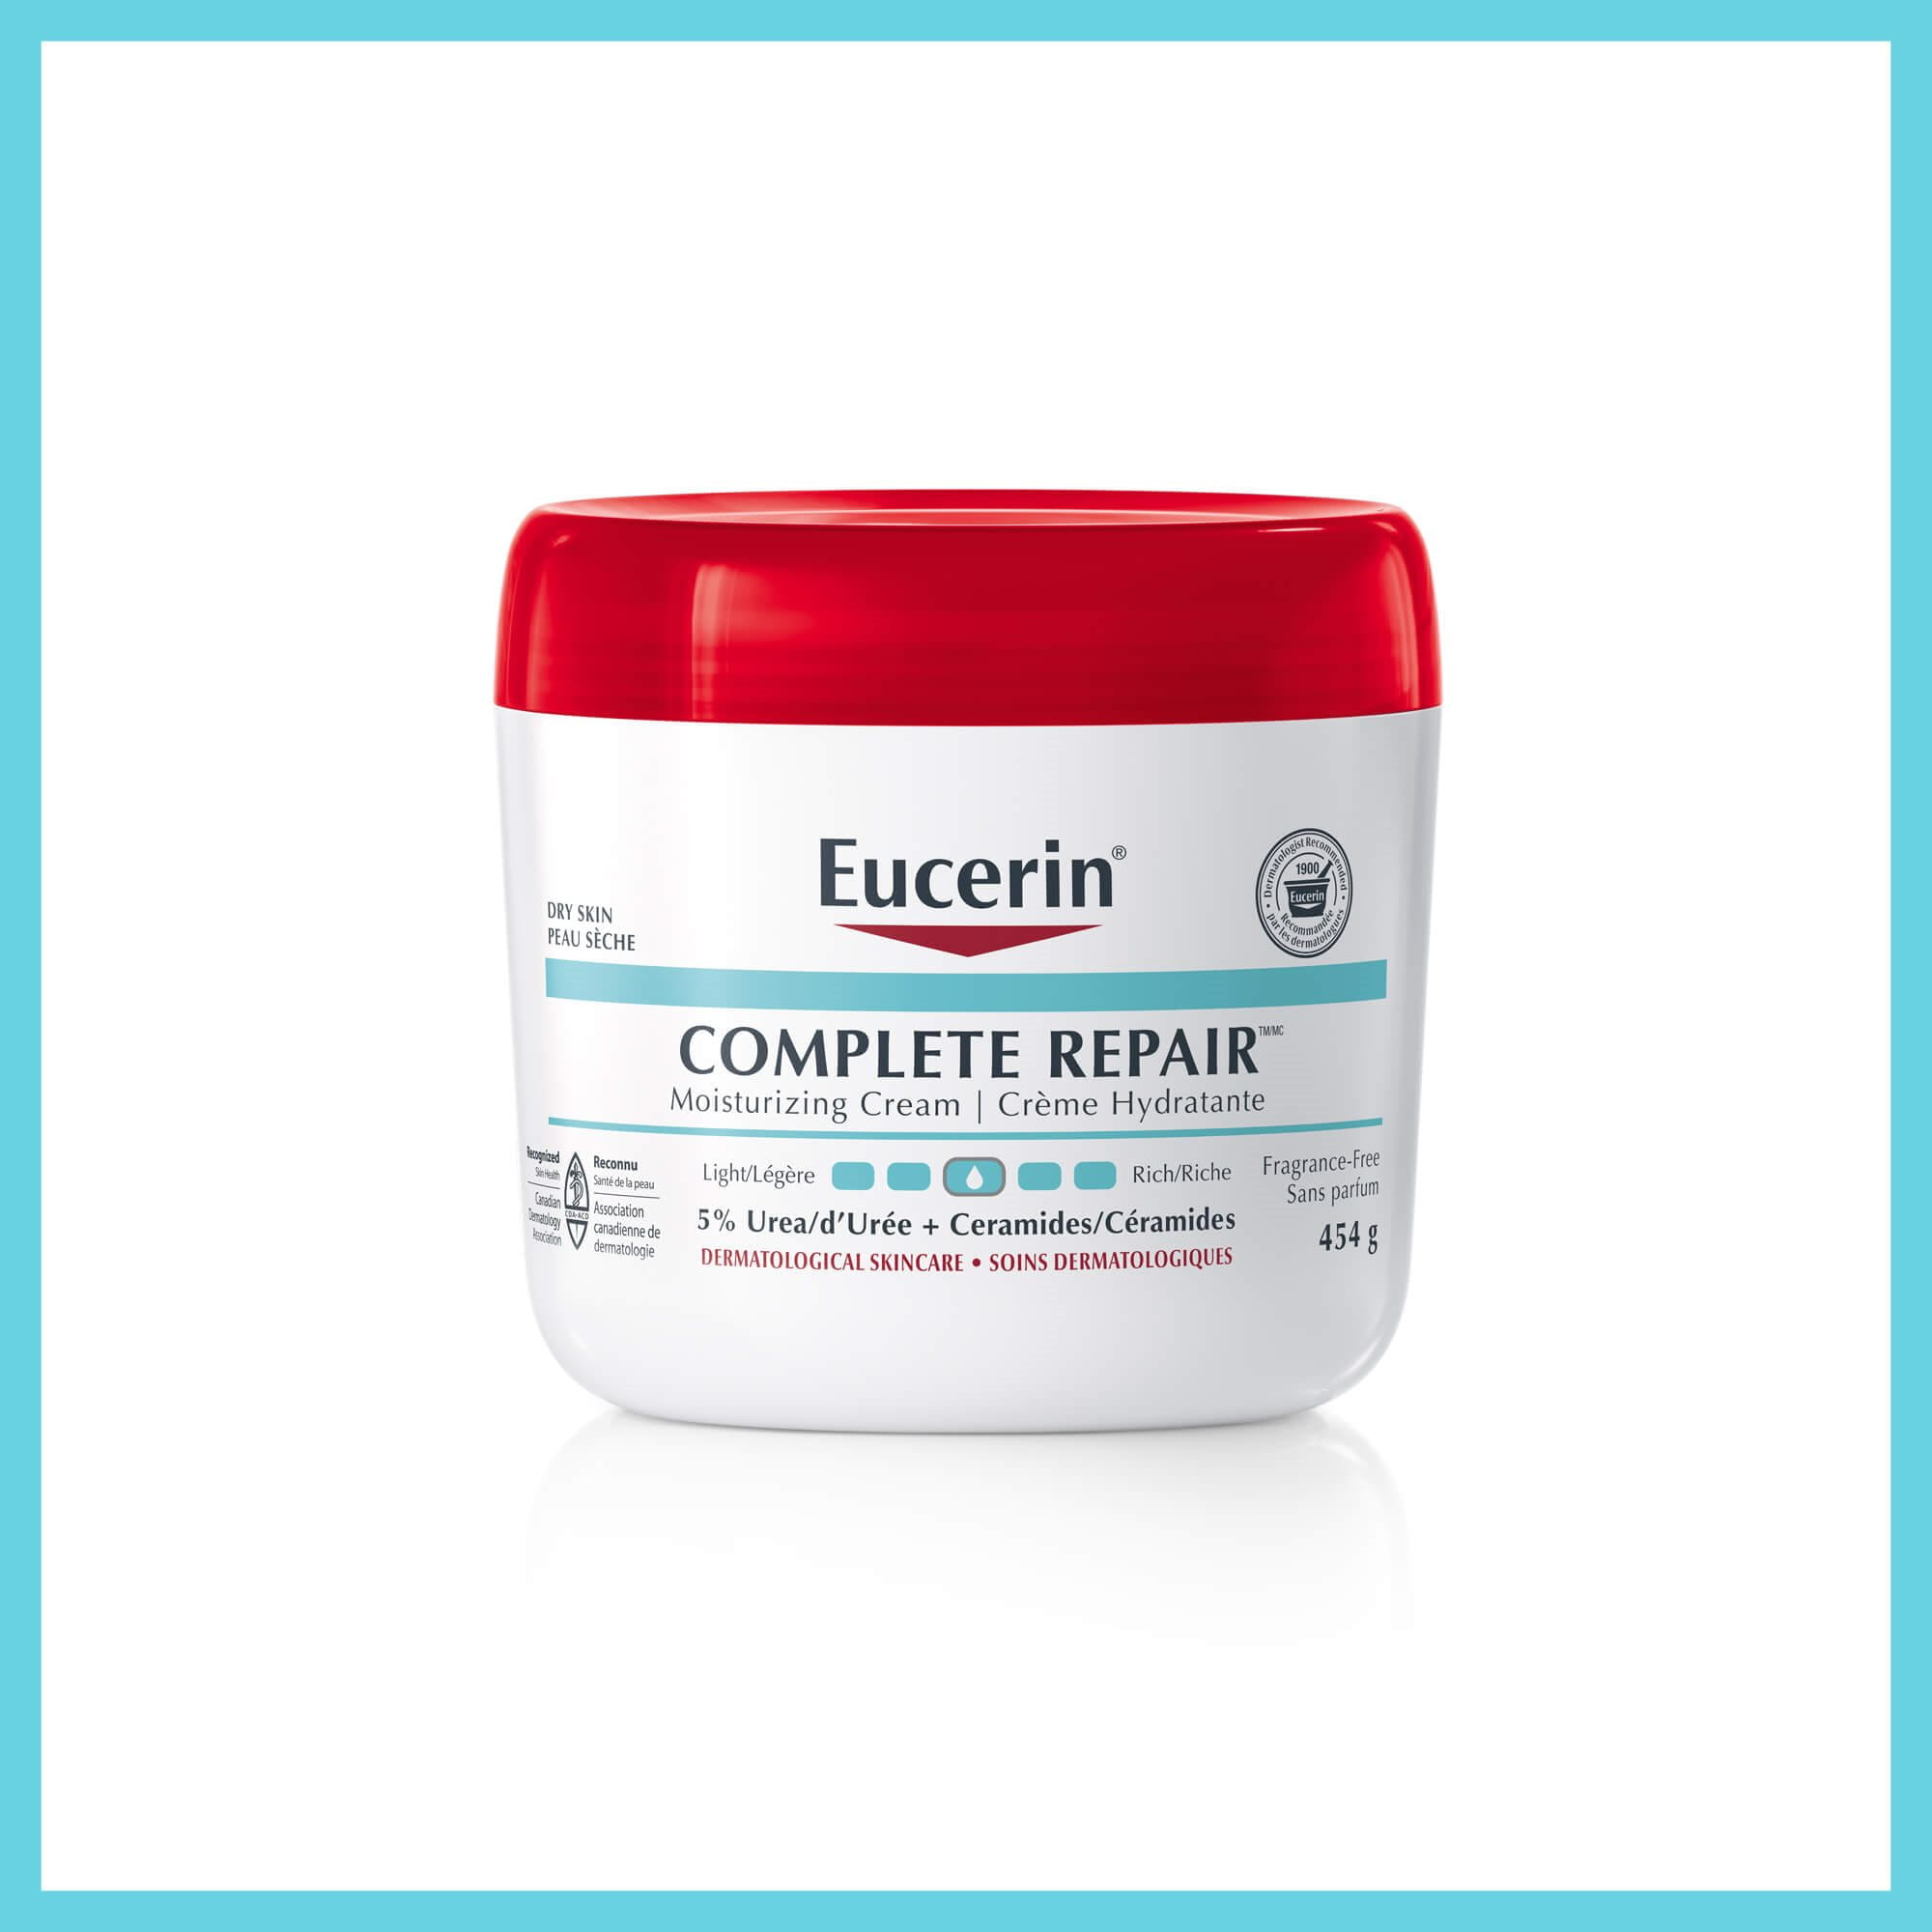 Eucerin Complete Repair Moisturizing Cream